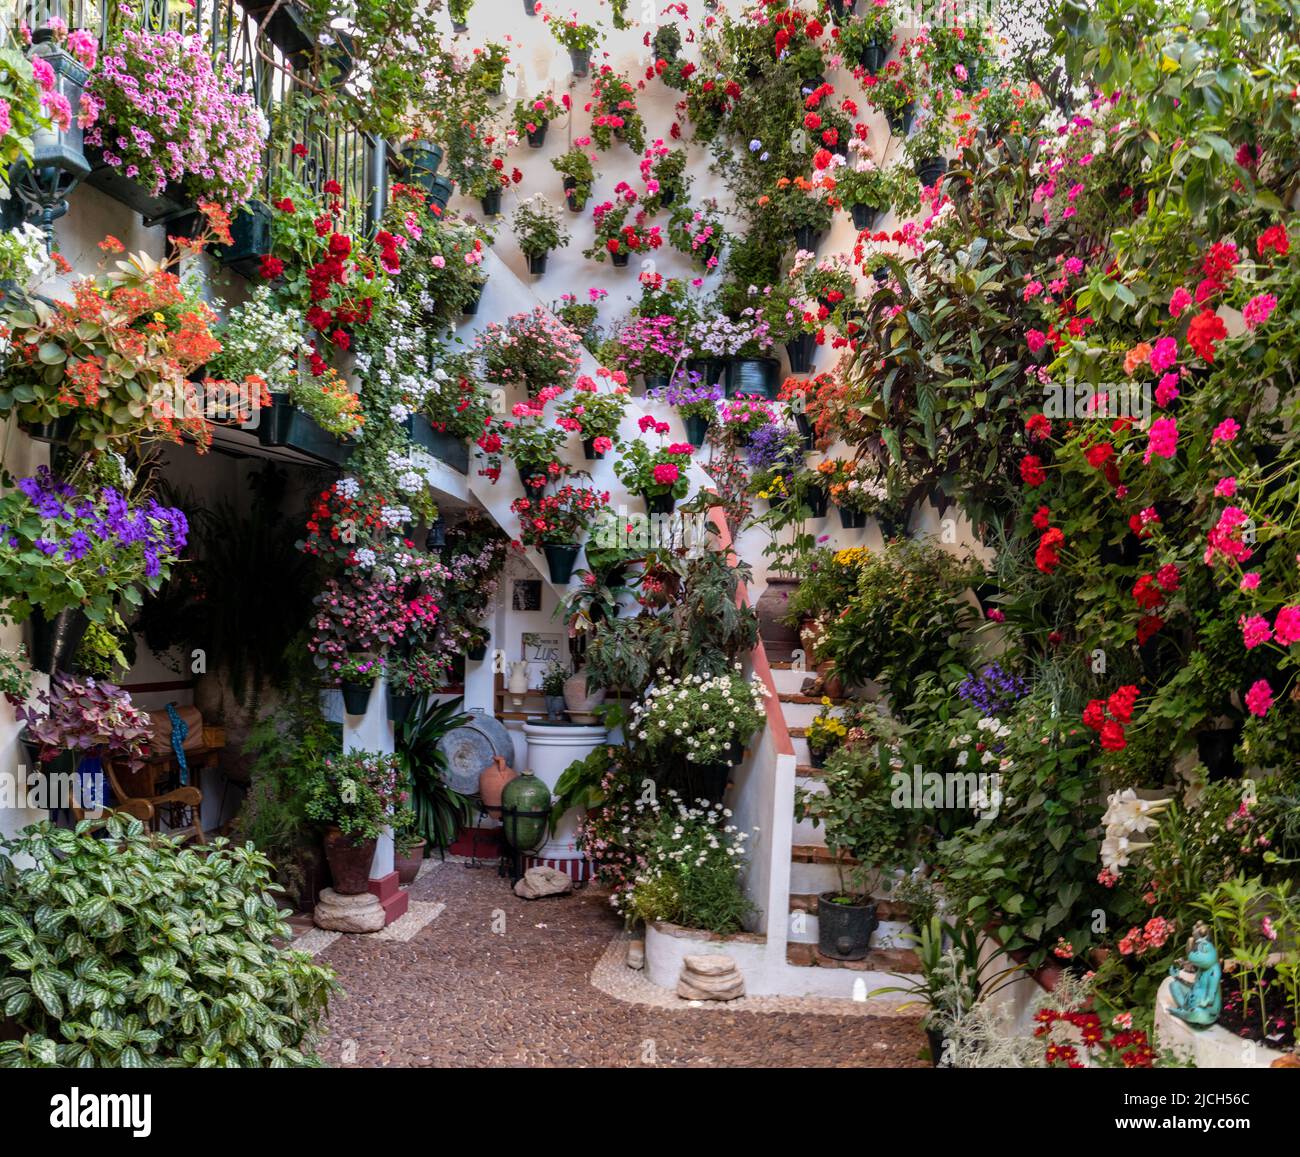 Patio con escamera, lleno de flores en primavera, Córdoba, España. Banque D'Images